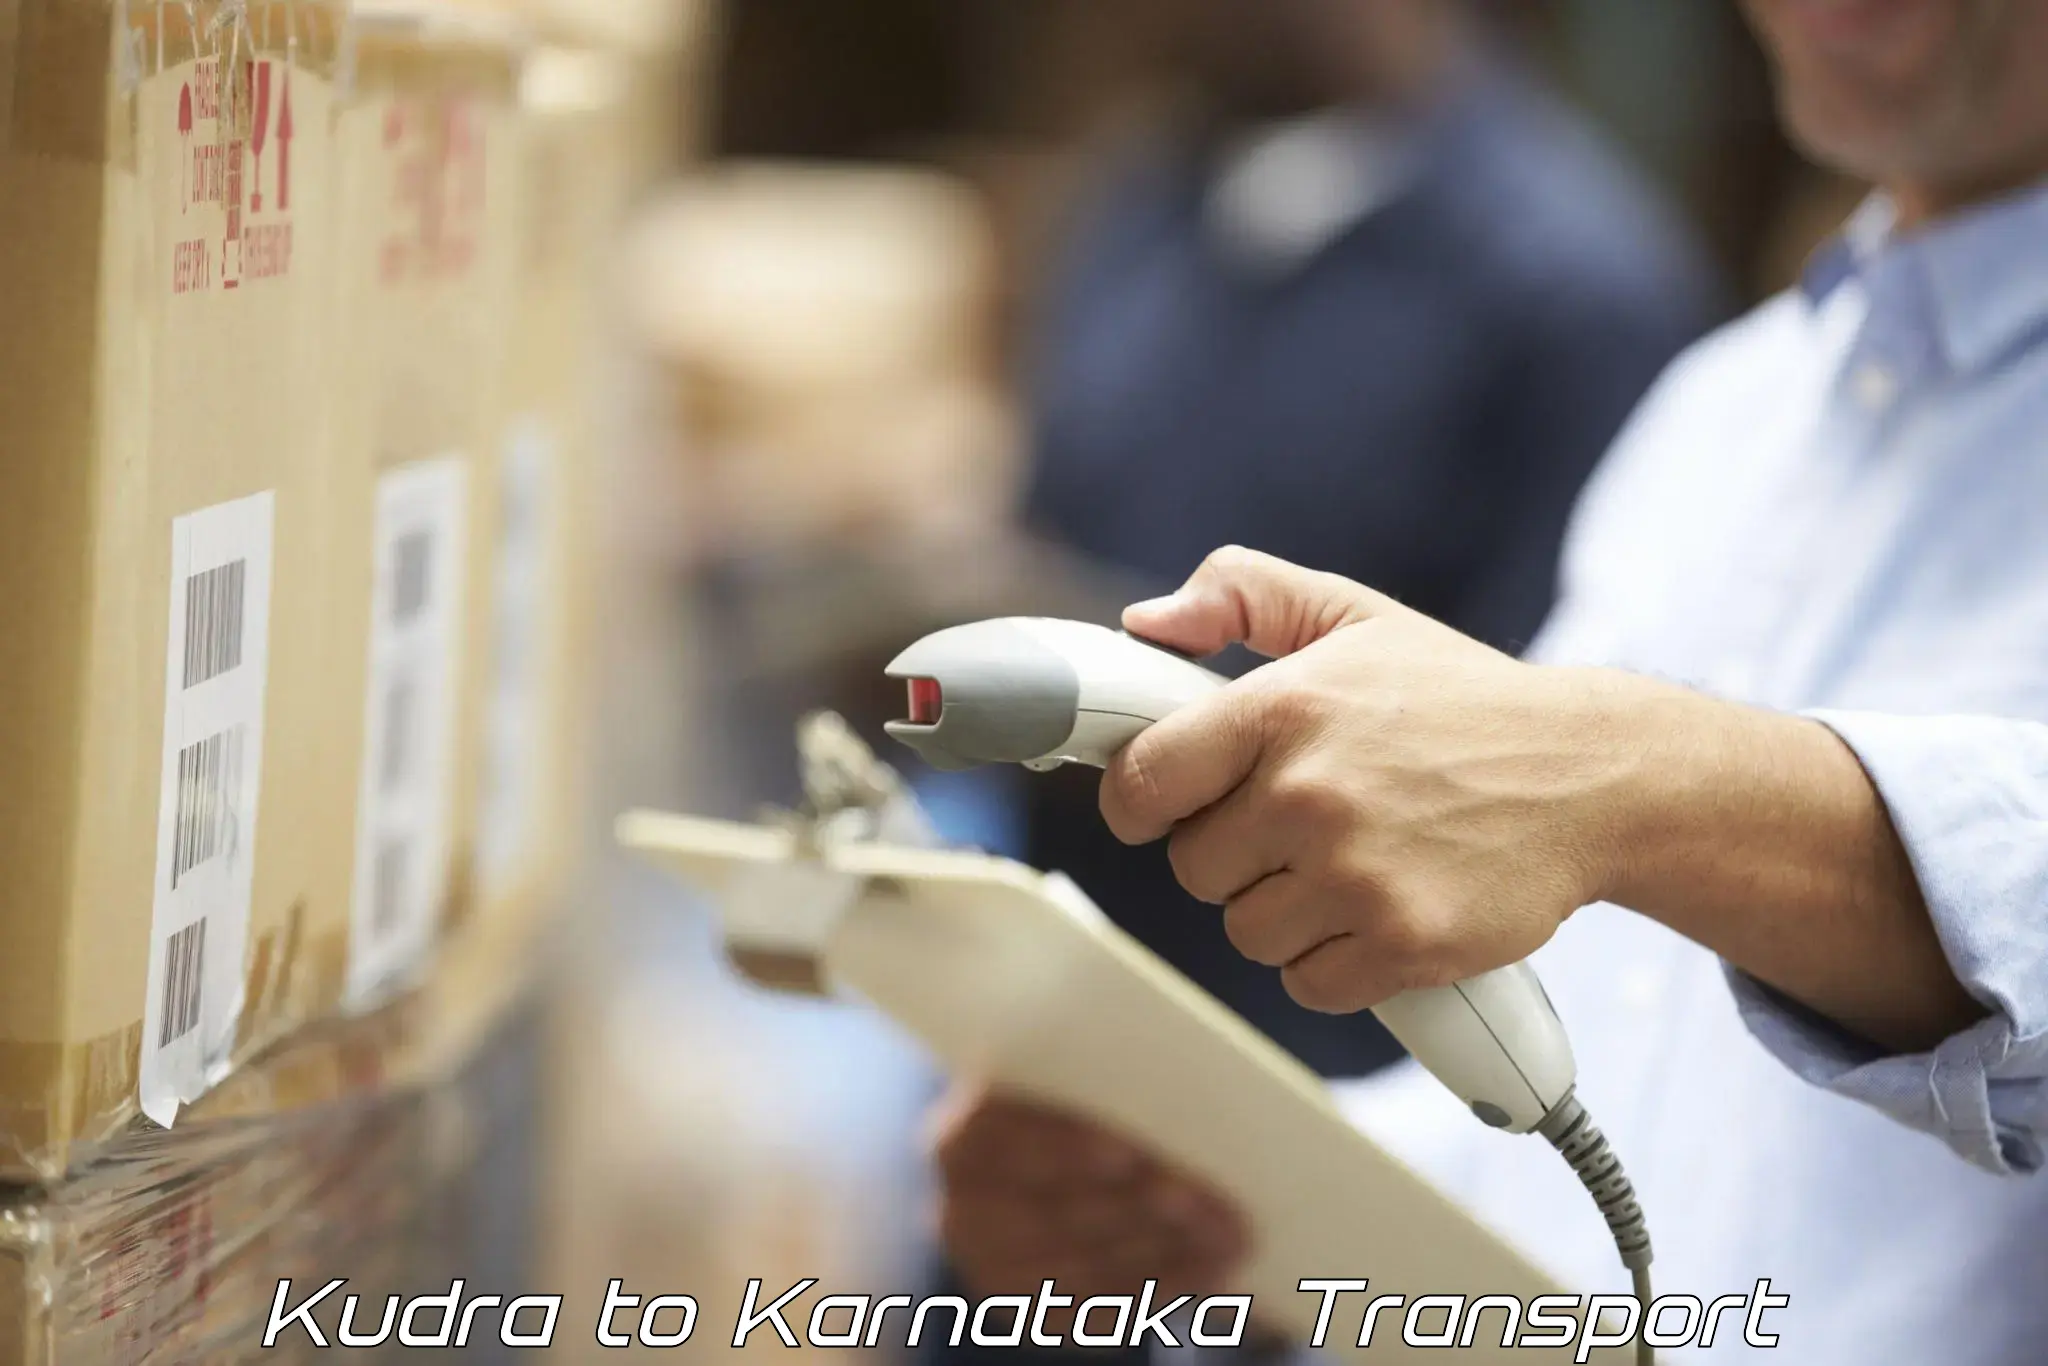 Pick up transport service Kudra to Nagamangala